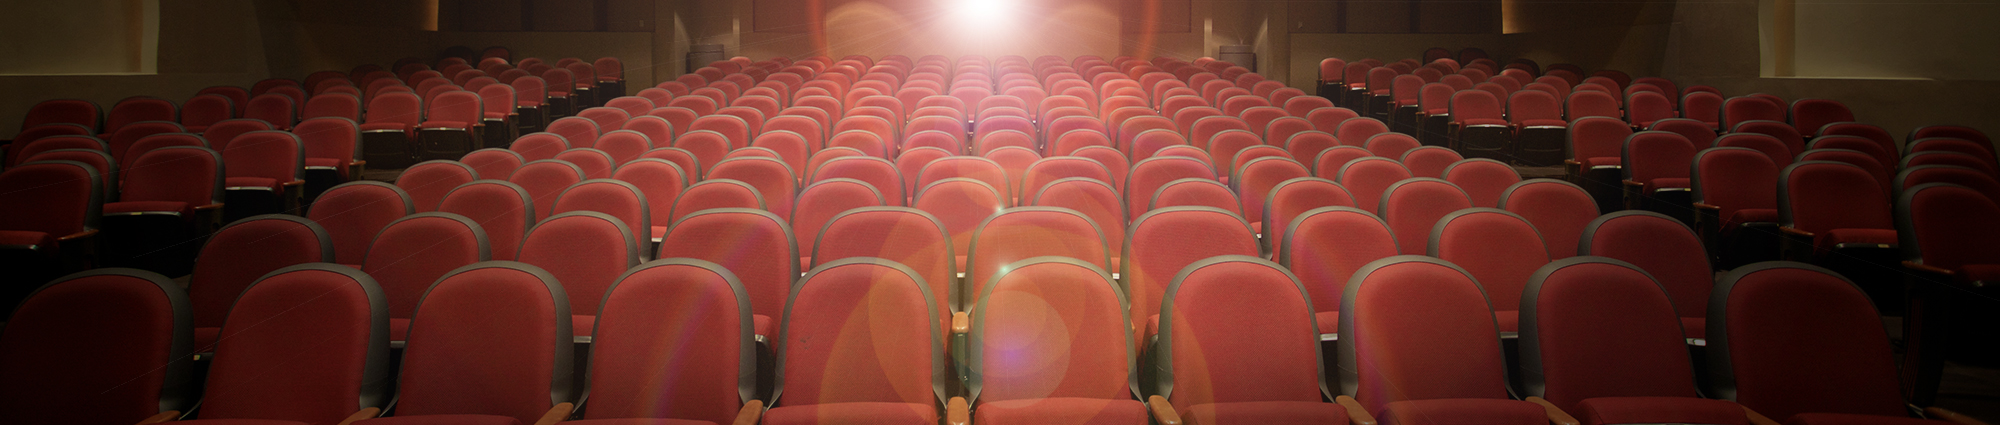 Empty theatre seating